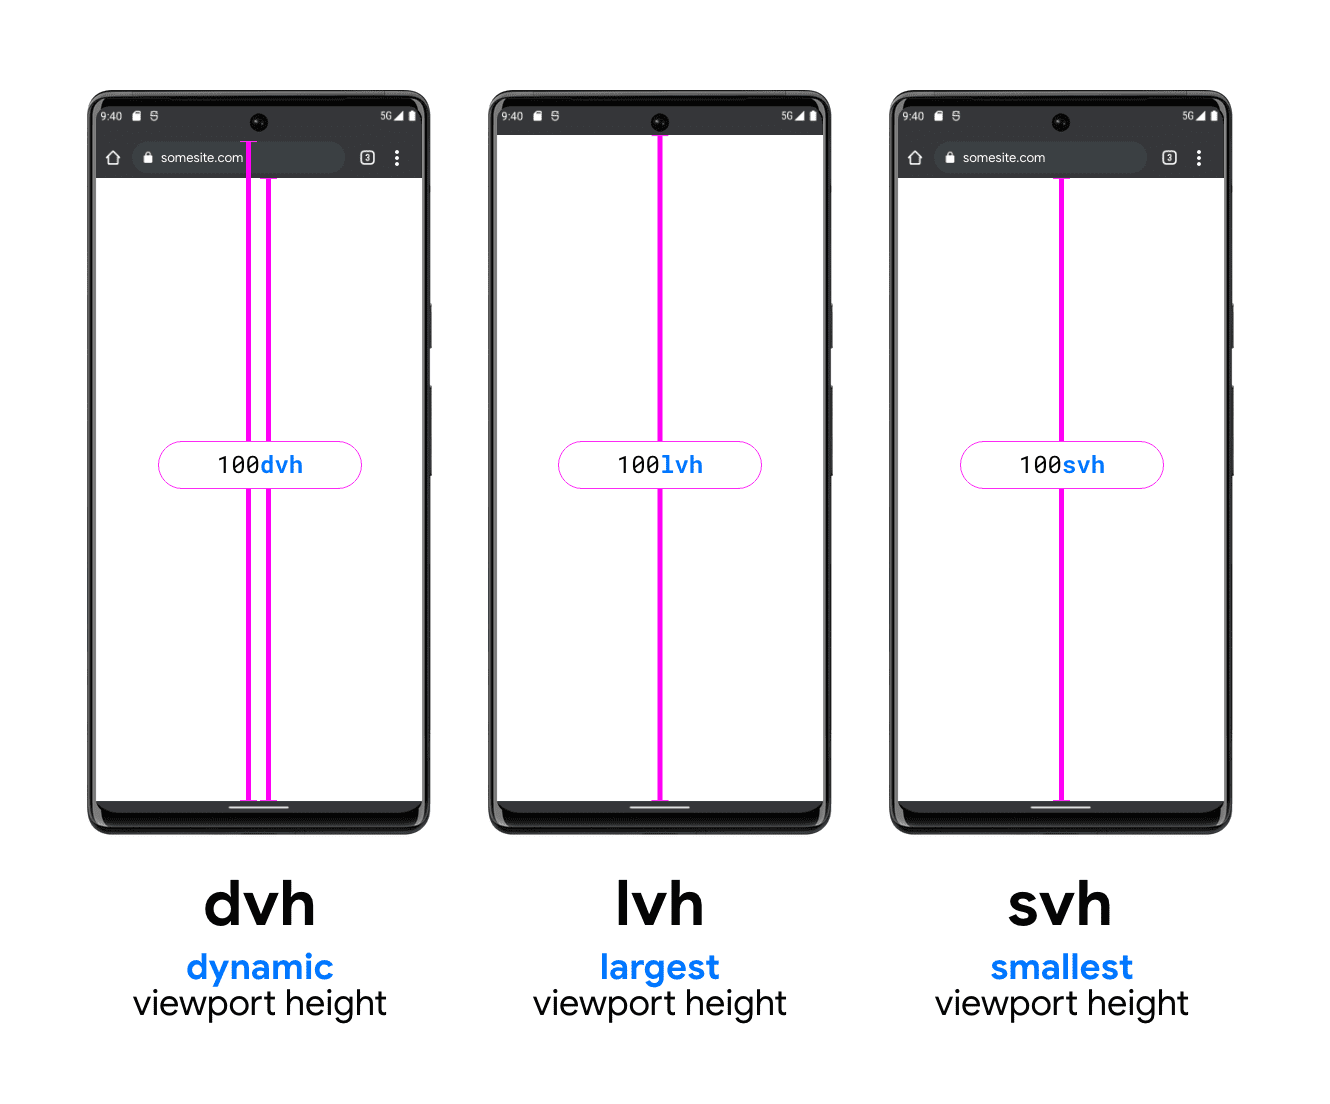 Gambar dengan tiga ponsel untuk membantu mengilustrasikan DVH, LVH, dan SVH. Telepon contoh DVH memiliki dua garis vertikal, satu di antara bagian bawah kotak penelusuran dan bagian bawah area pandang, serta satu di antara di atas kotak penelusuran (di bawah status bar sistem) ke bagian bawah area pandang; menunjukkan bagaimana DVH dapat berupa salah satu dari kedua panjang tersebut. LVH ditampilkan di tengah dengan satu baris antara
   bagian bawah status bar perangkat dan tombol area pandang ponsel. Yang terakhir adalah
   contoh unit SVH, yang menampilkan garis dari bagian bawah kotak penelusuran browser
   ke bagian bawah area pandang